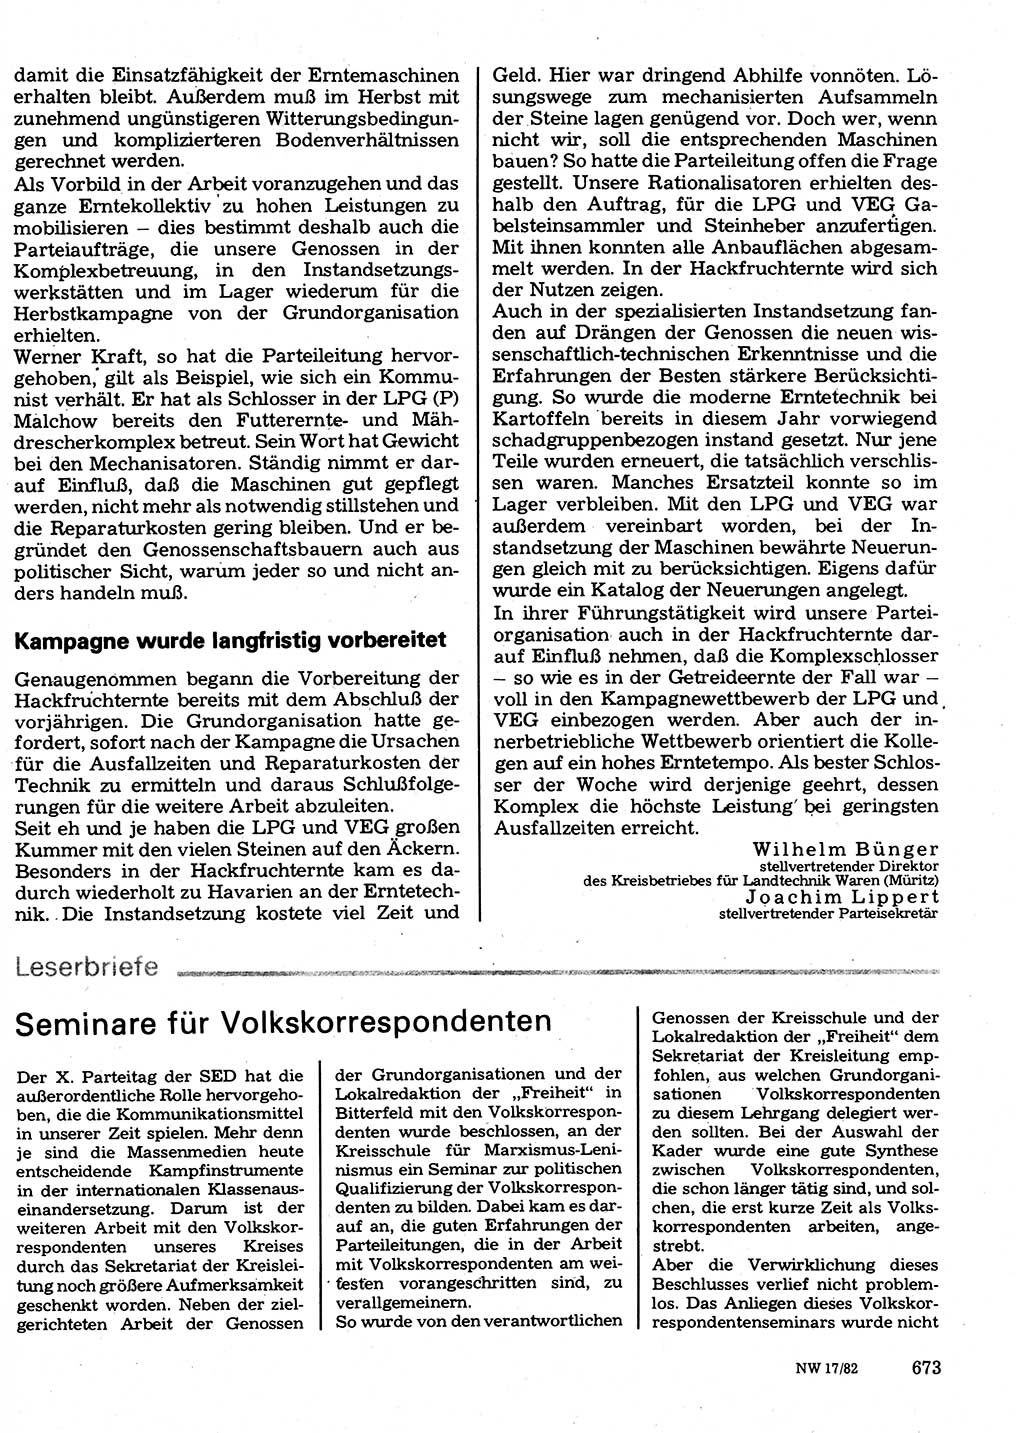 Neuer Weg (NW), Organ des Zentralkomitees (ZK) der SED (Sozialistische Einheitspartei Deutschlands) für Fragen des Parteilebens, 37. Jahrgang [Deutsche Demokratische Republik (DDR)] 1982, Seite 673 (NW ZK SED DDR 1982, S. 673)